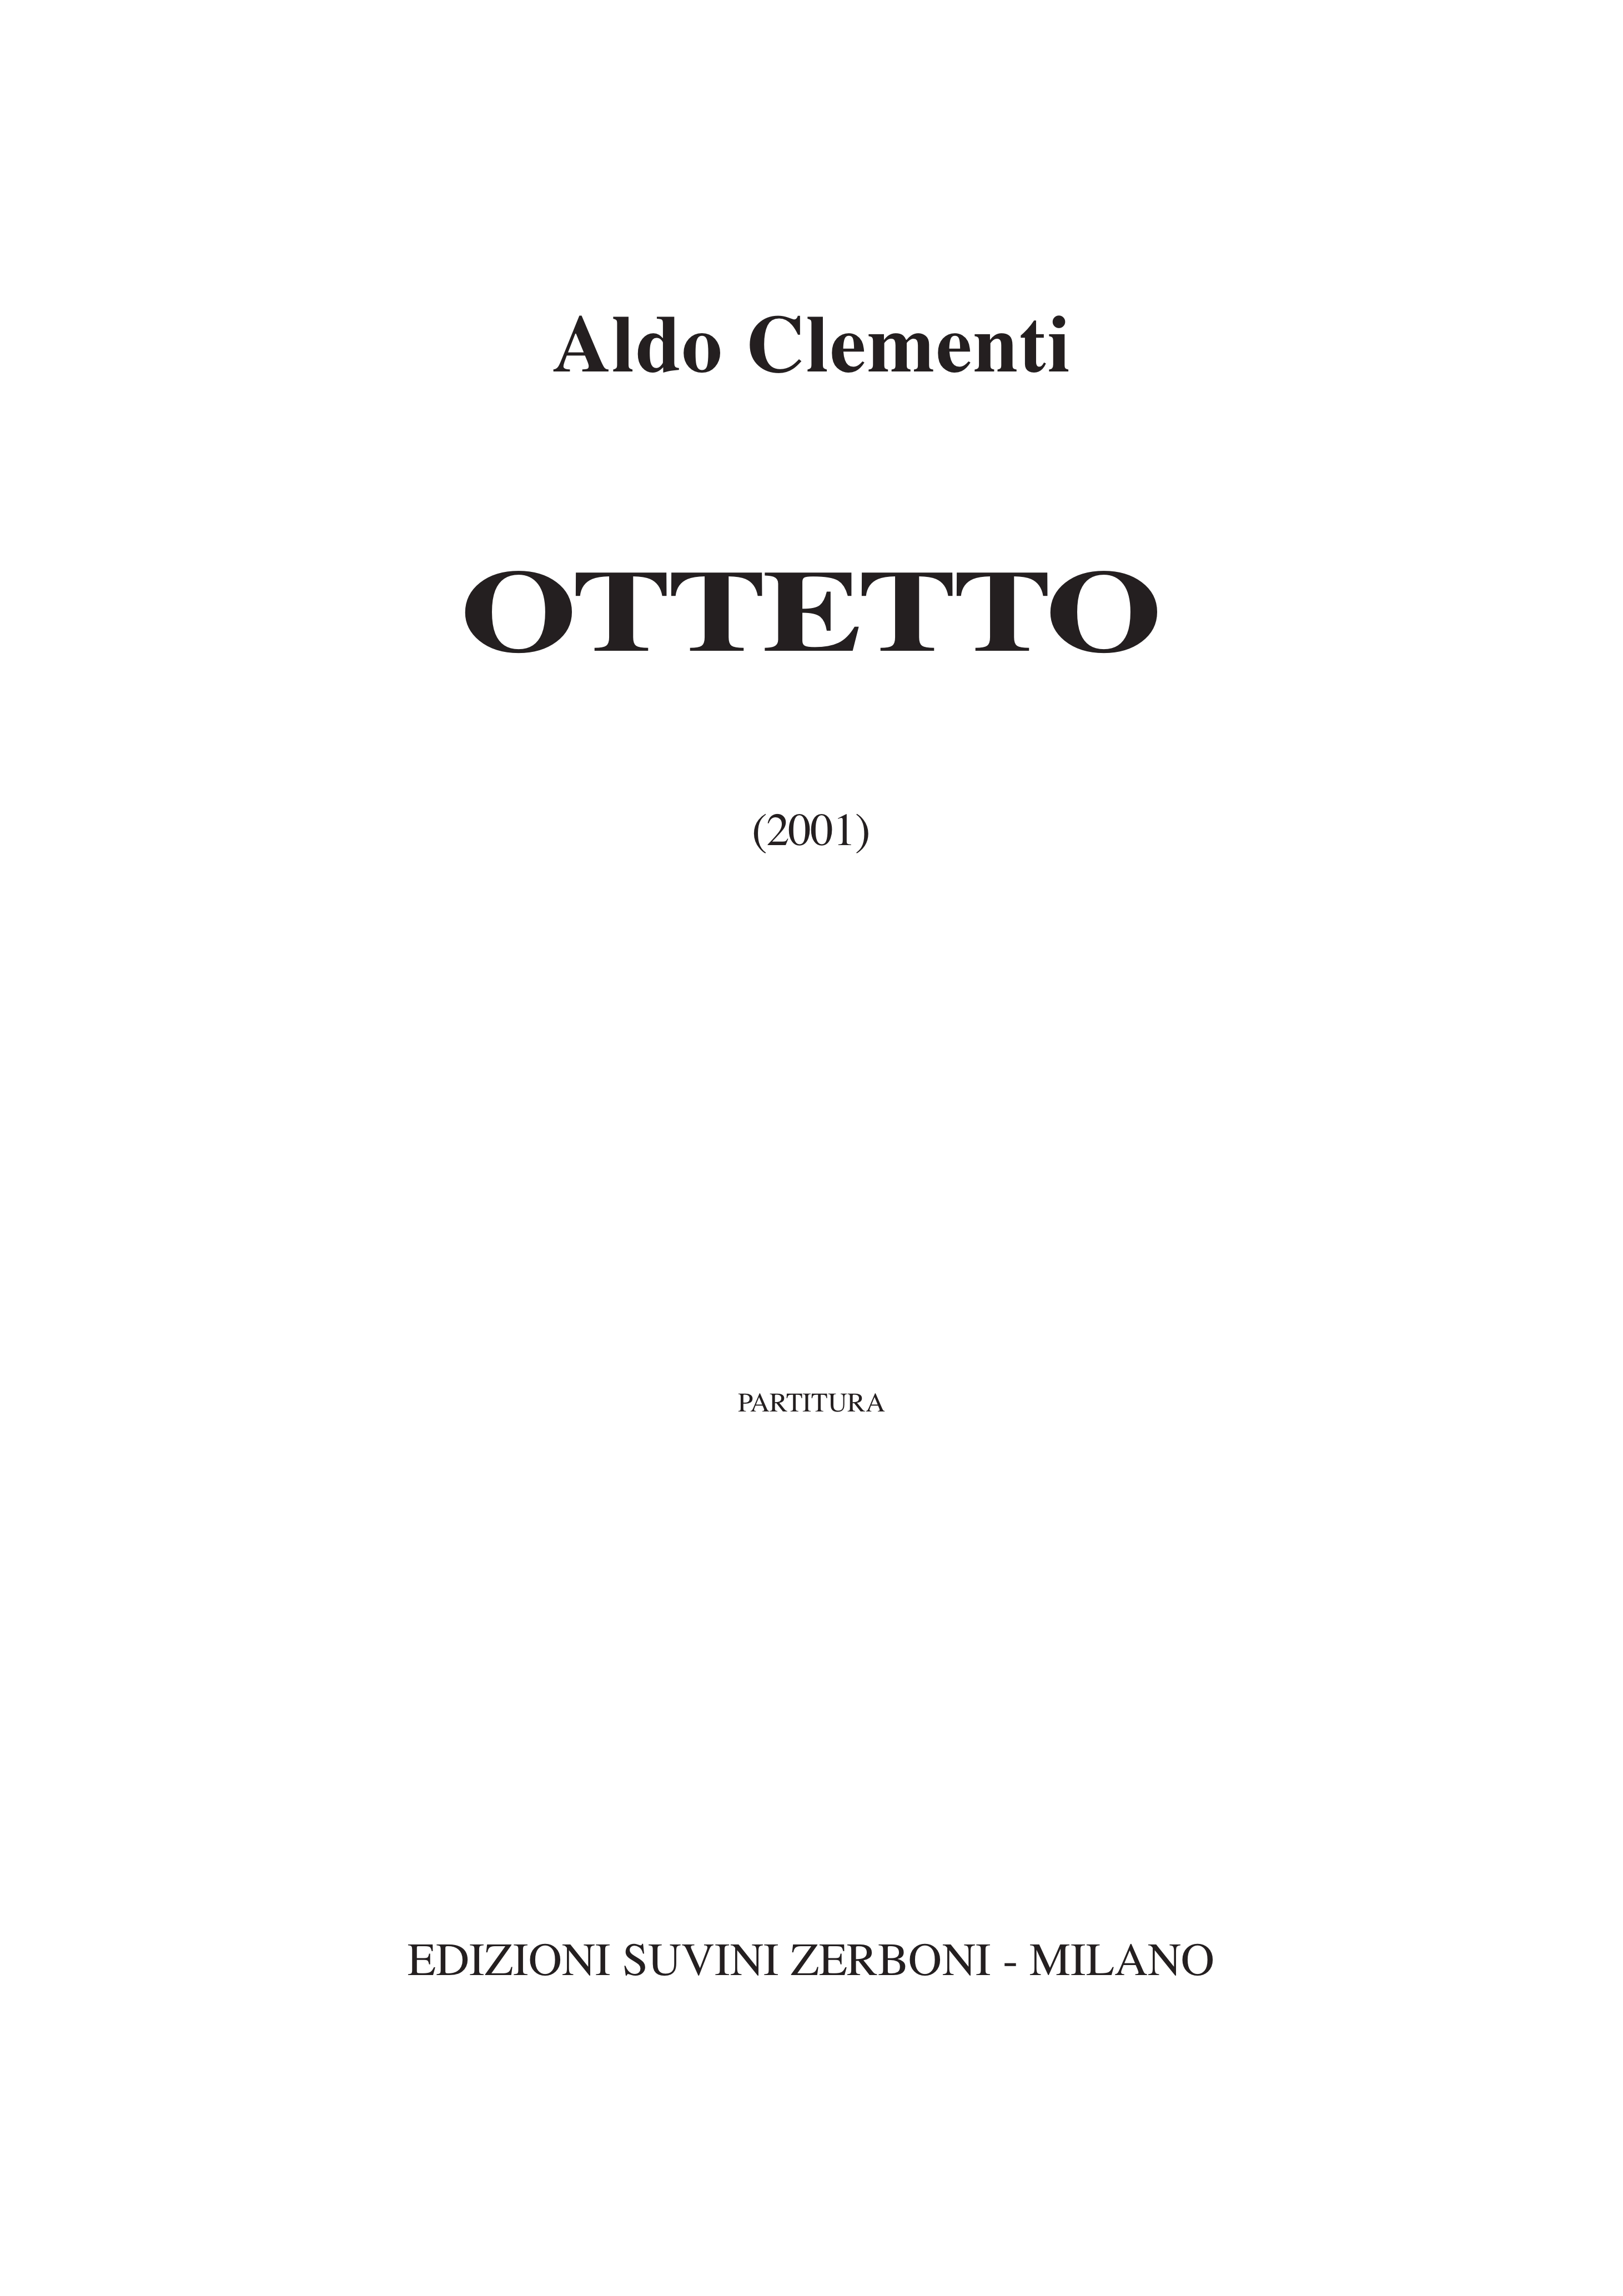 Ottetto_Clementi Aldo 1